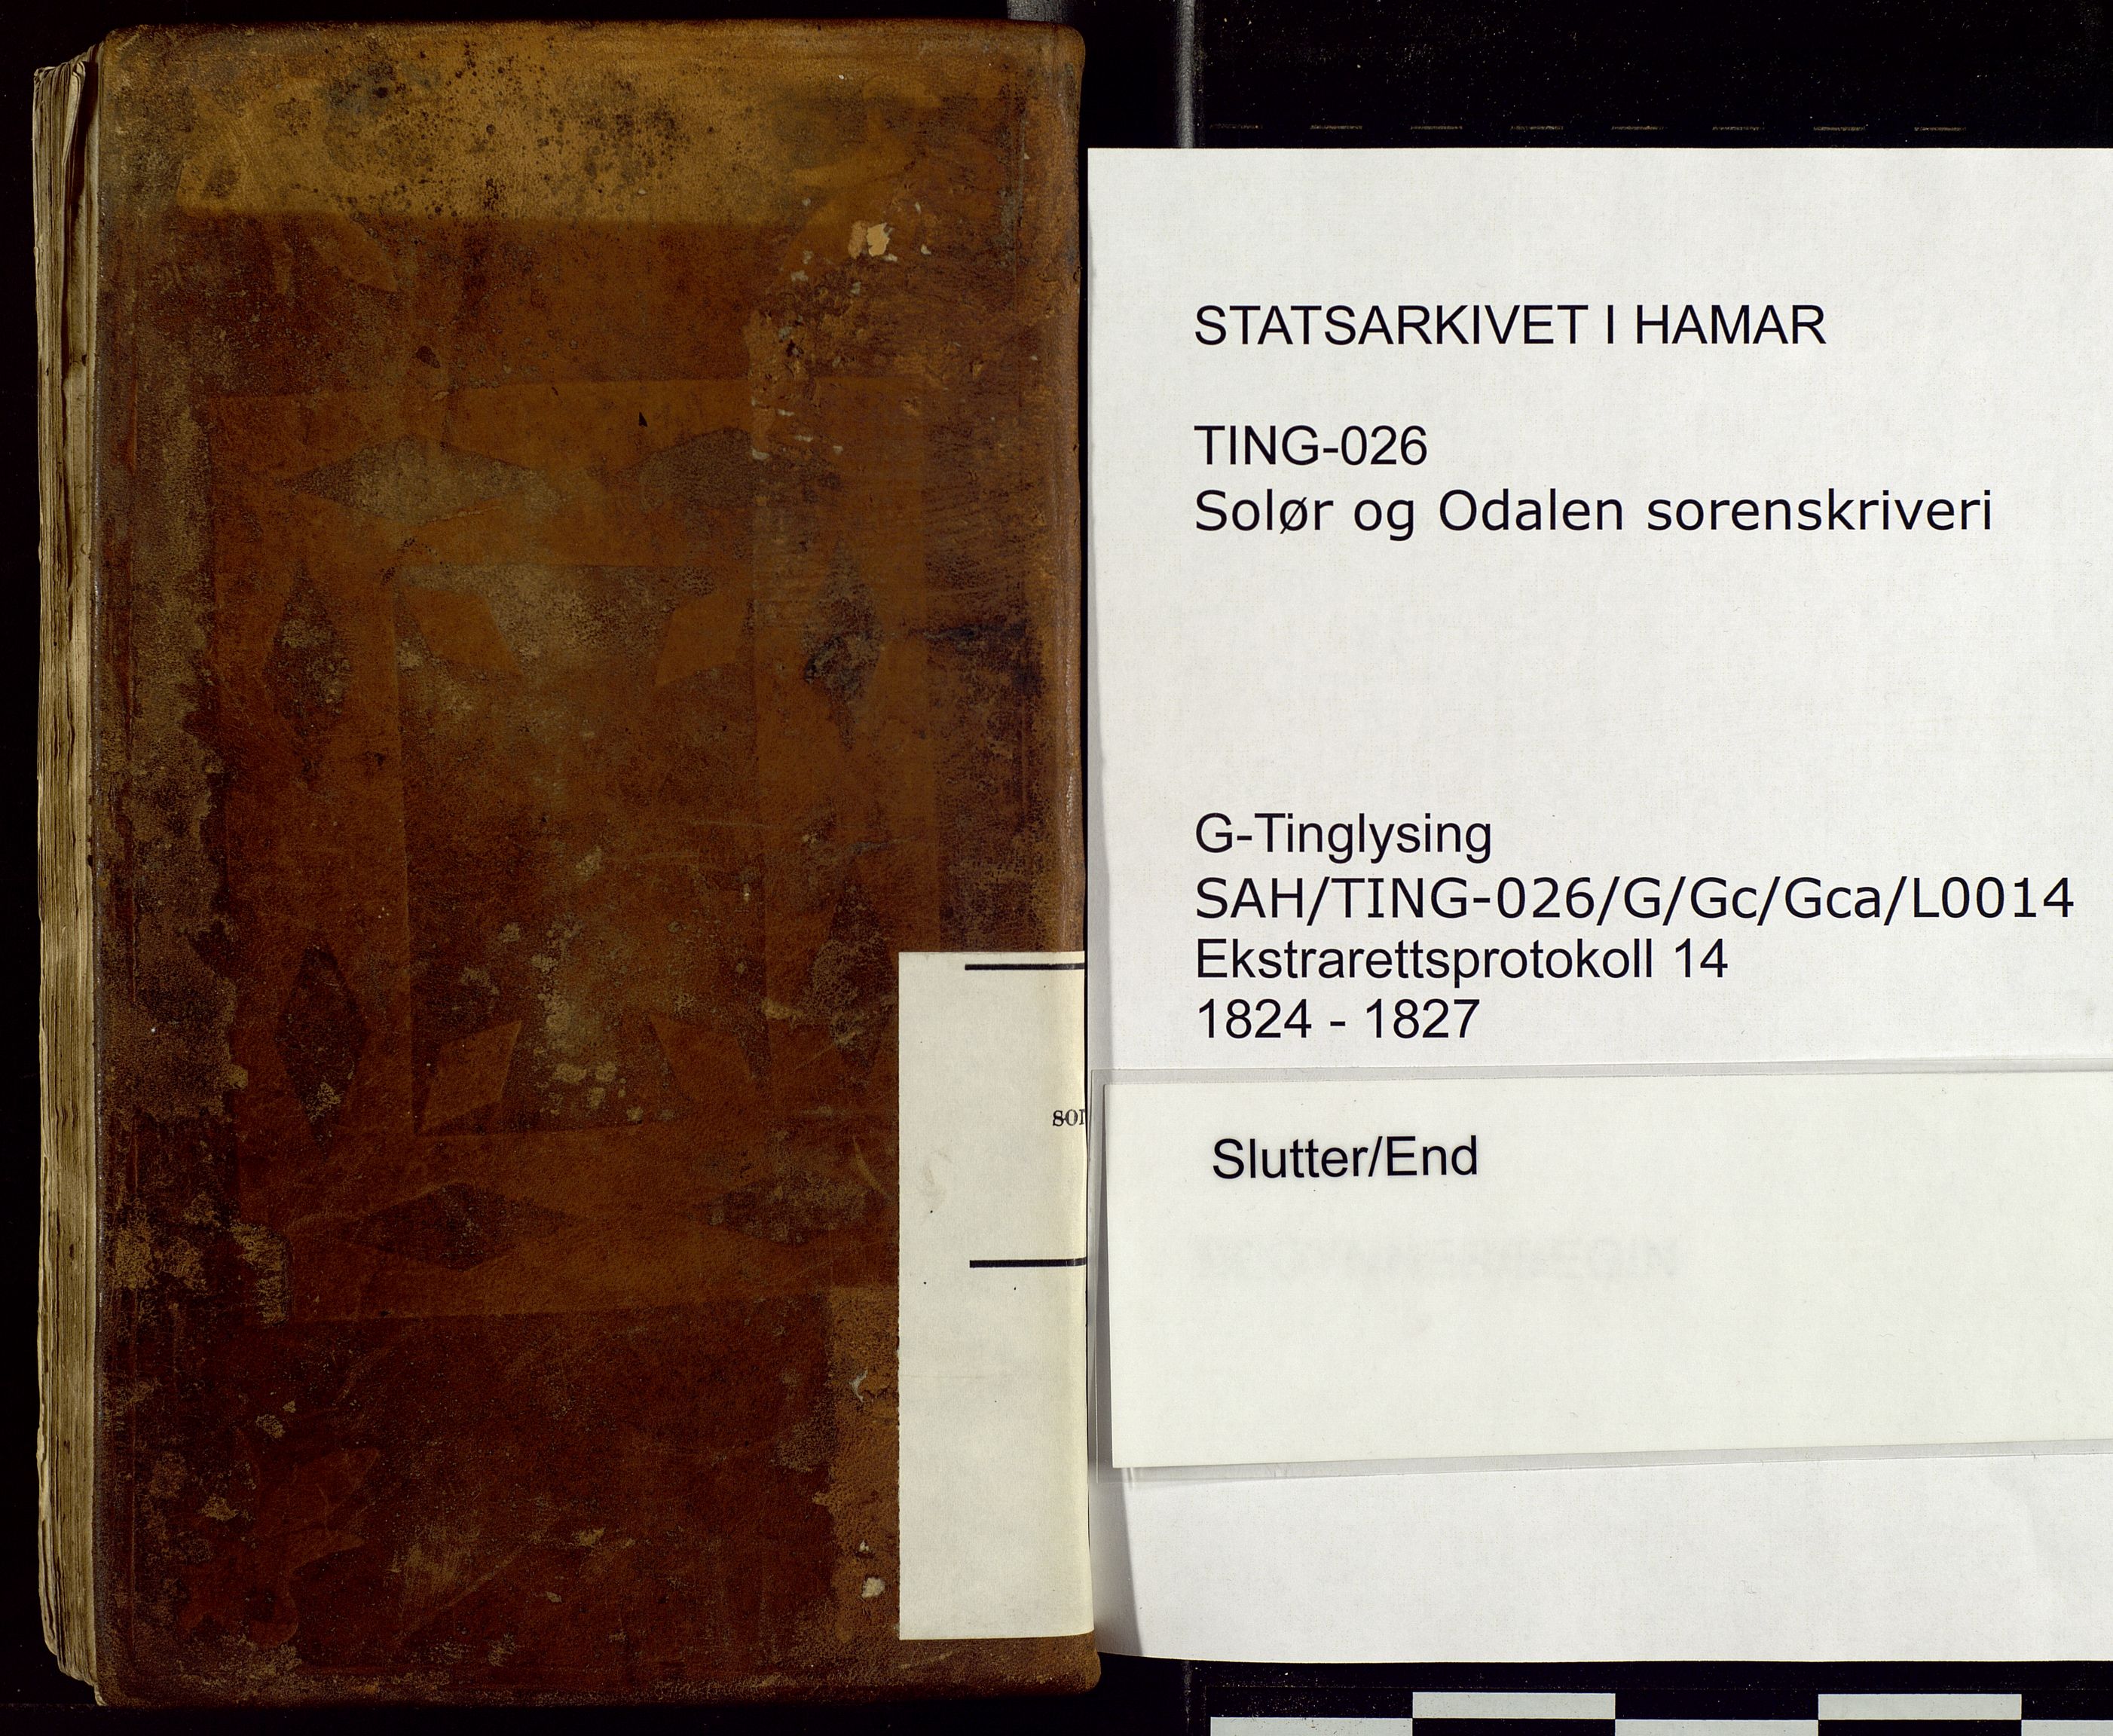 Solør og Odalen sorenskriveri, SAH/TING-026/G/Gc/Gca/L0014: Justis- og politisaker, 1824-1827